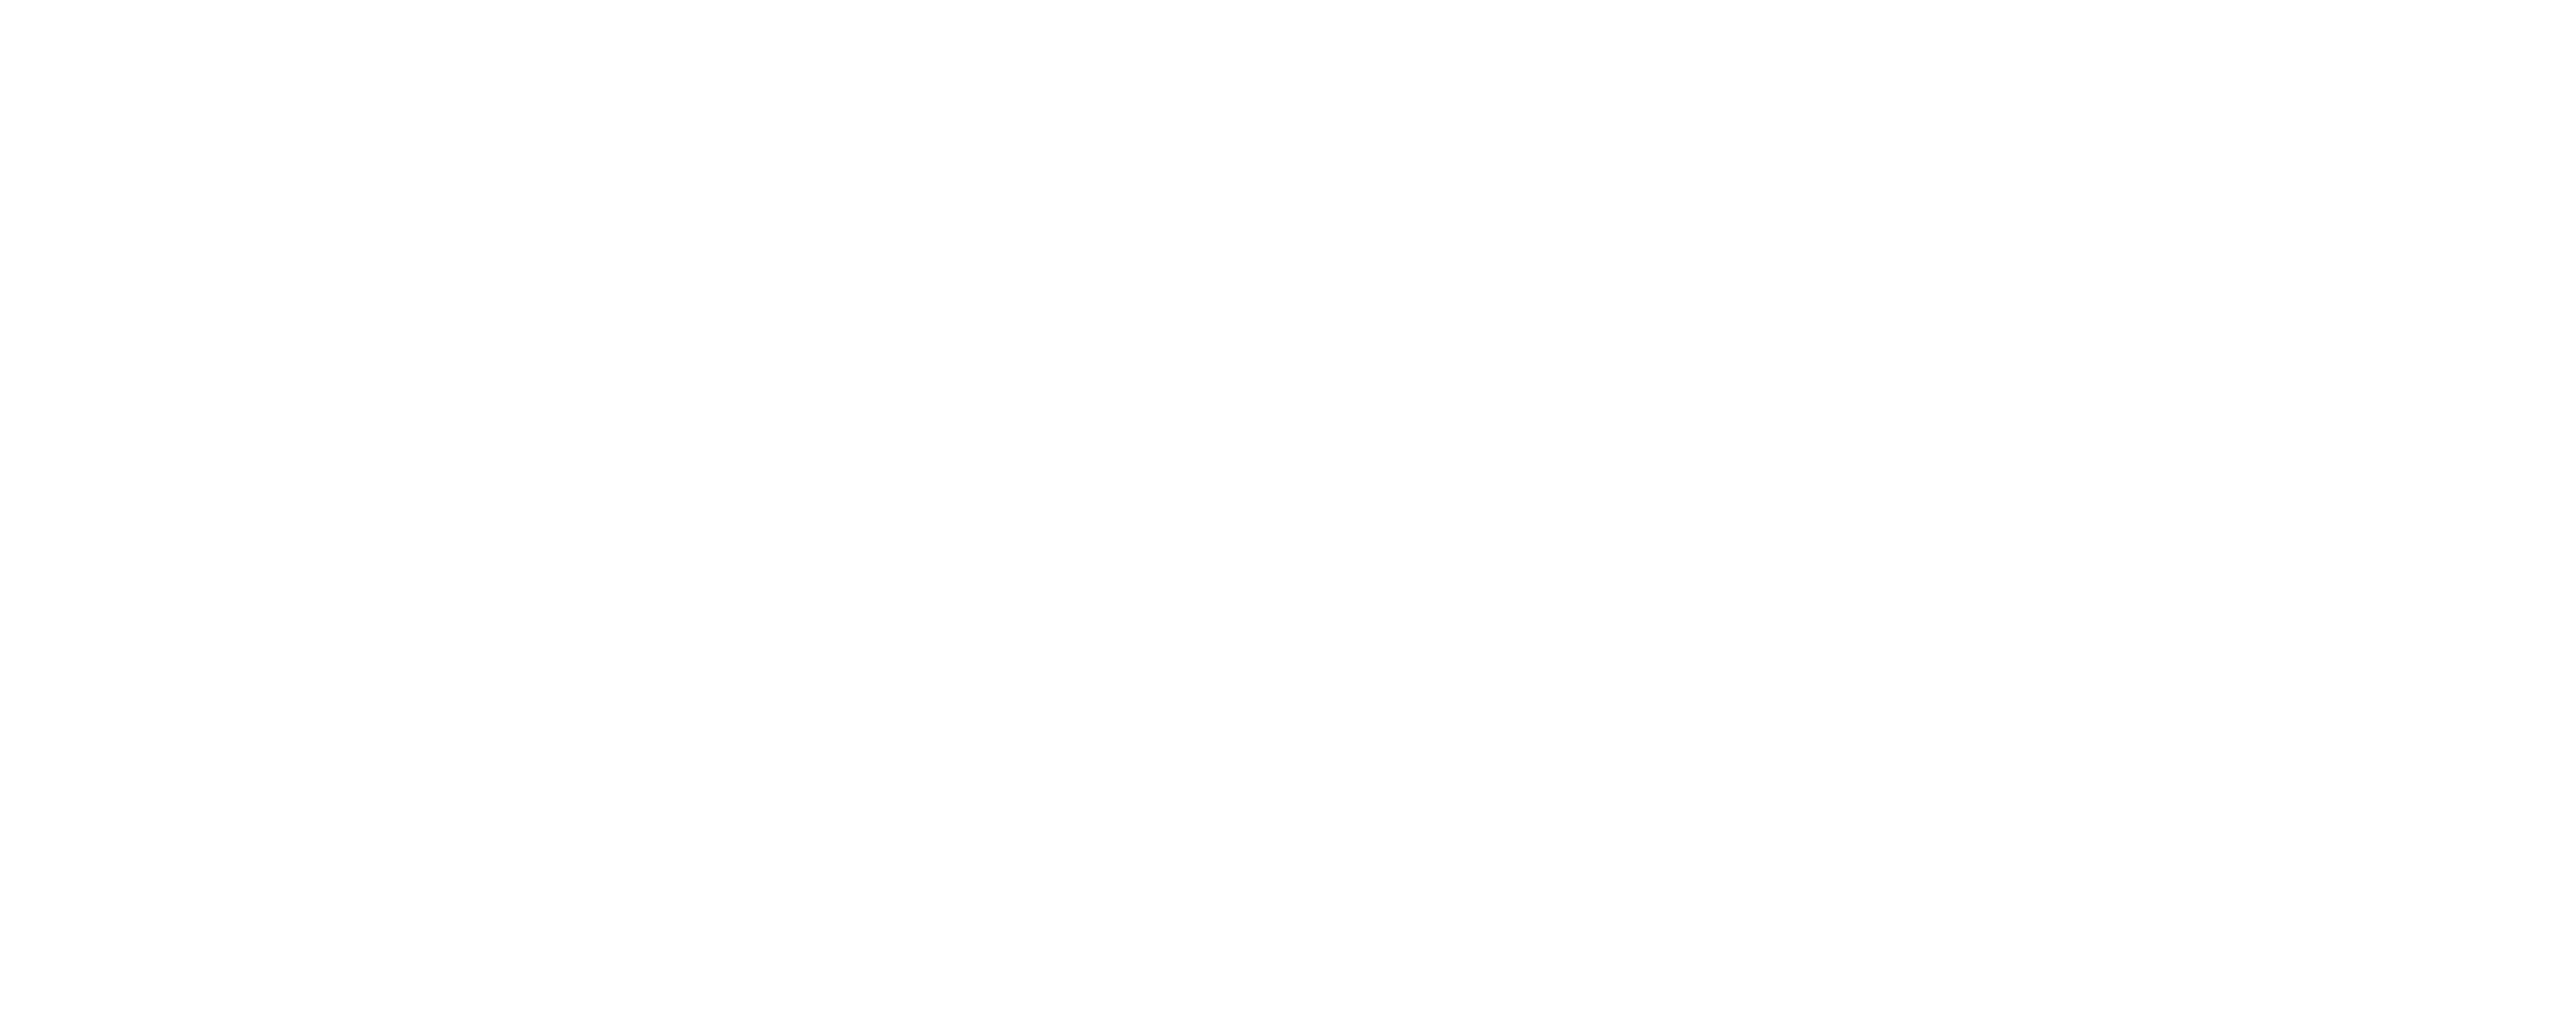 The Peninsulas at Lake Bob Sandlin